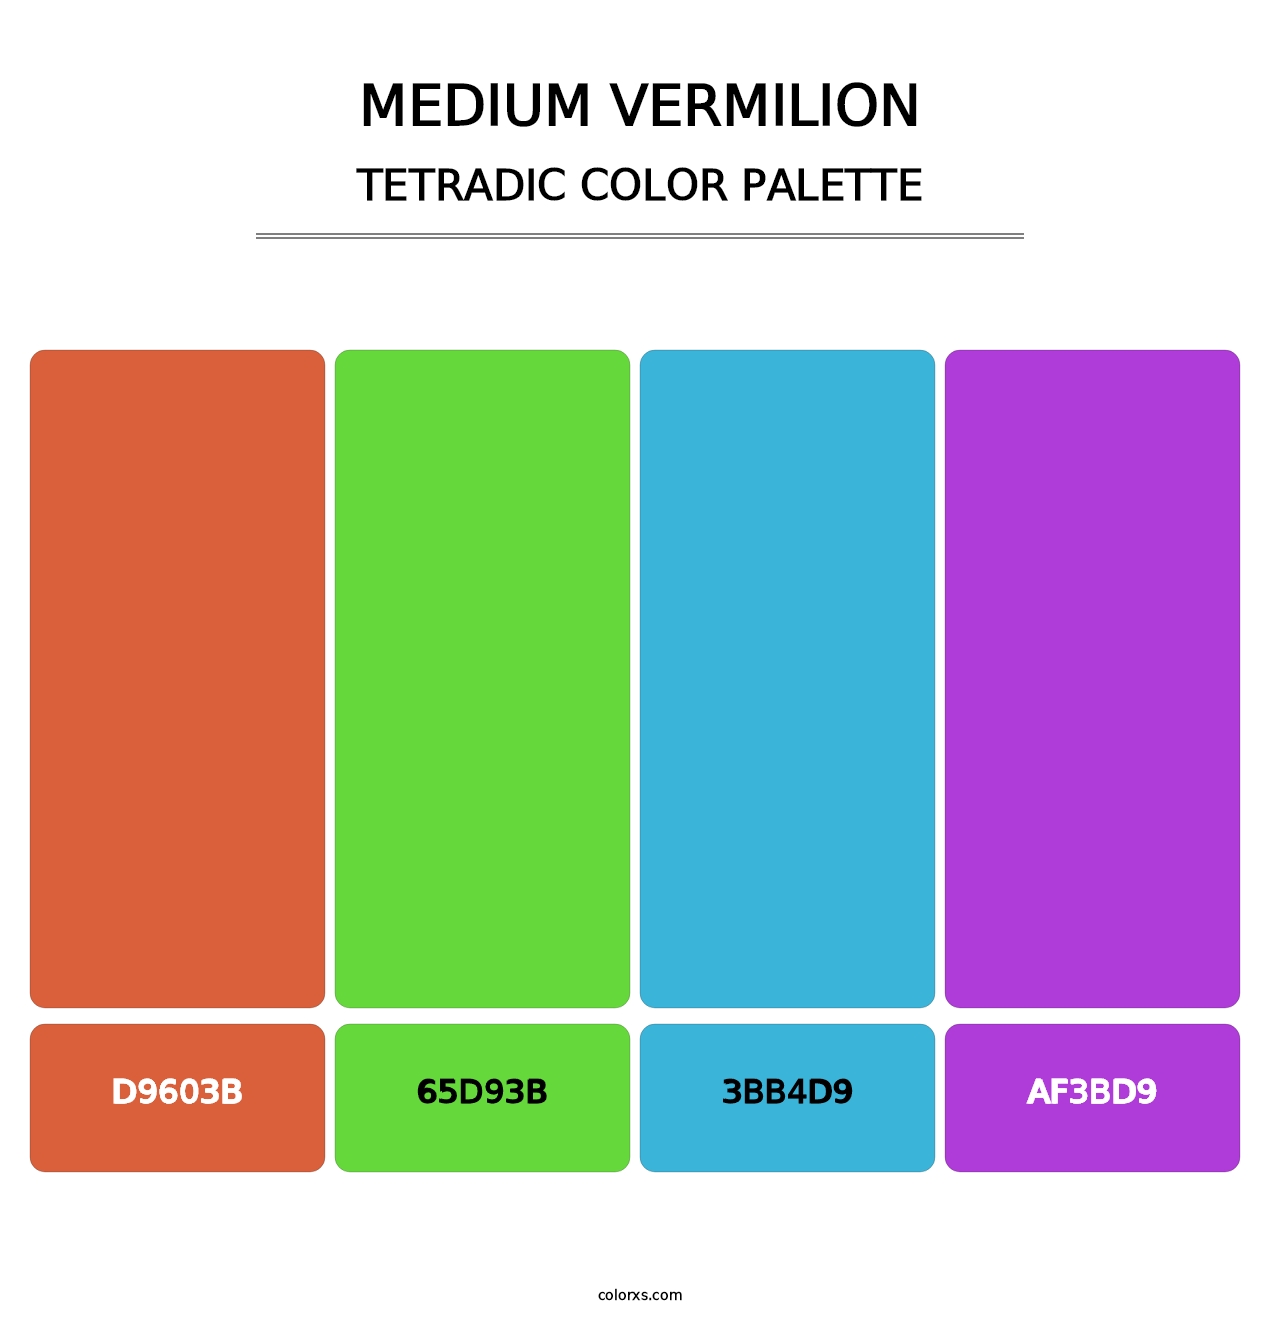 Medium Vermilion - Tetradic Color Palette